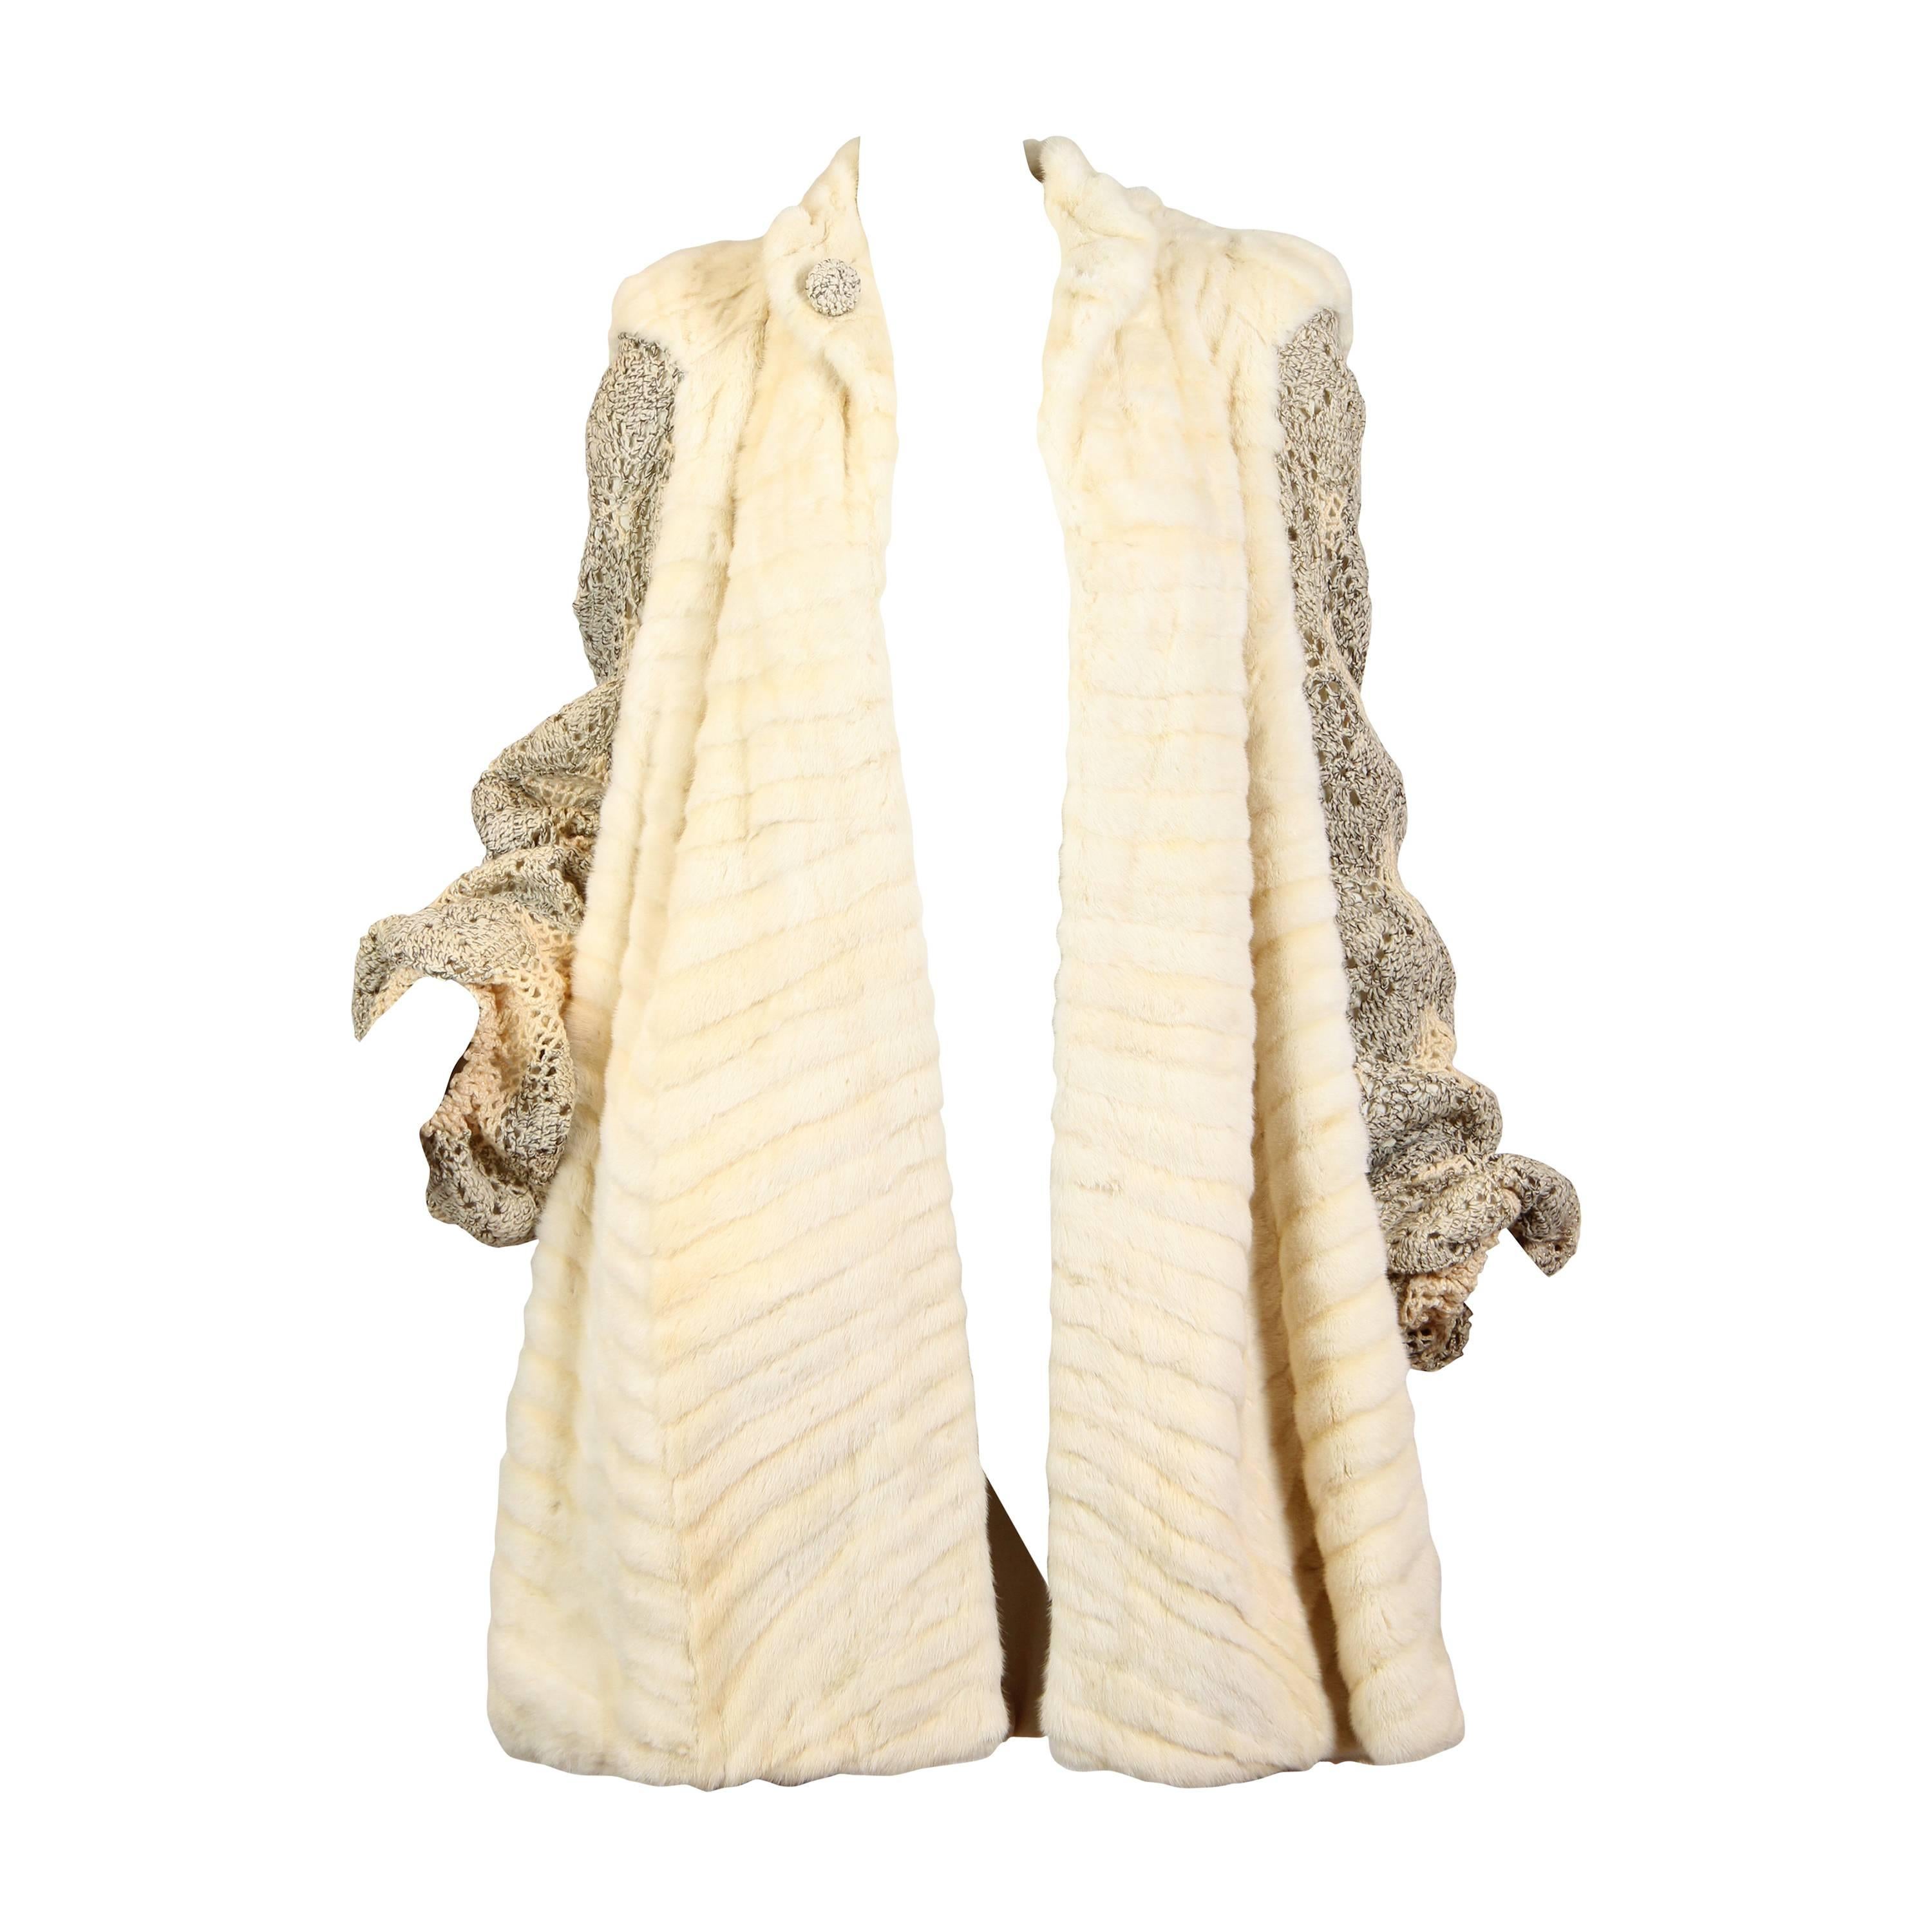 Manteau en fourrure d'hermine et laine mélangées crème métallisées, manches en dentelle au crochet, années 30